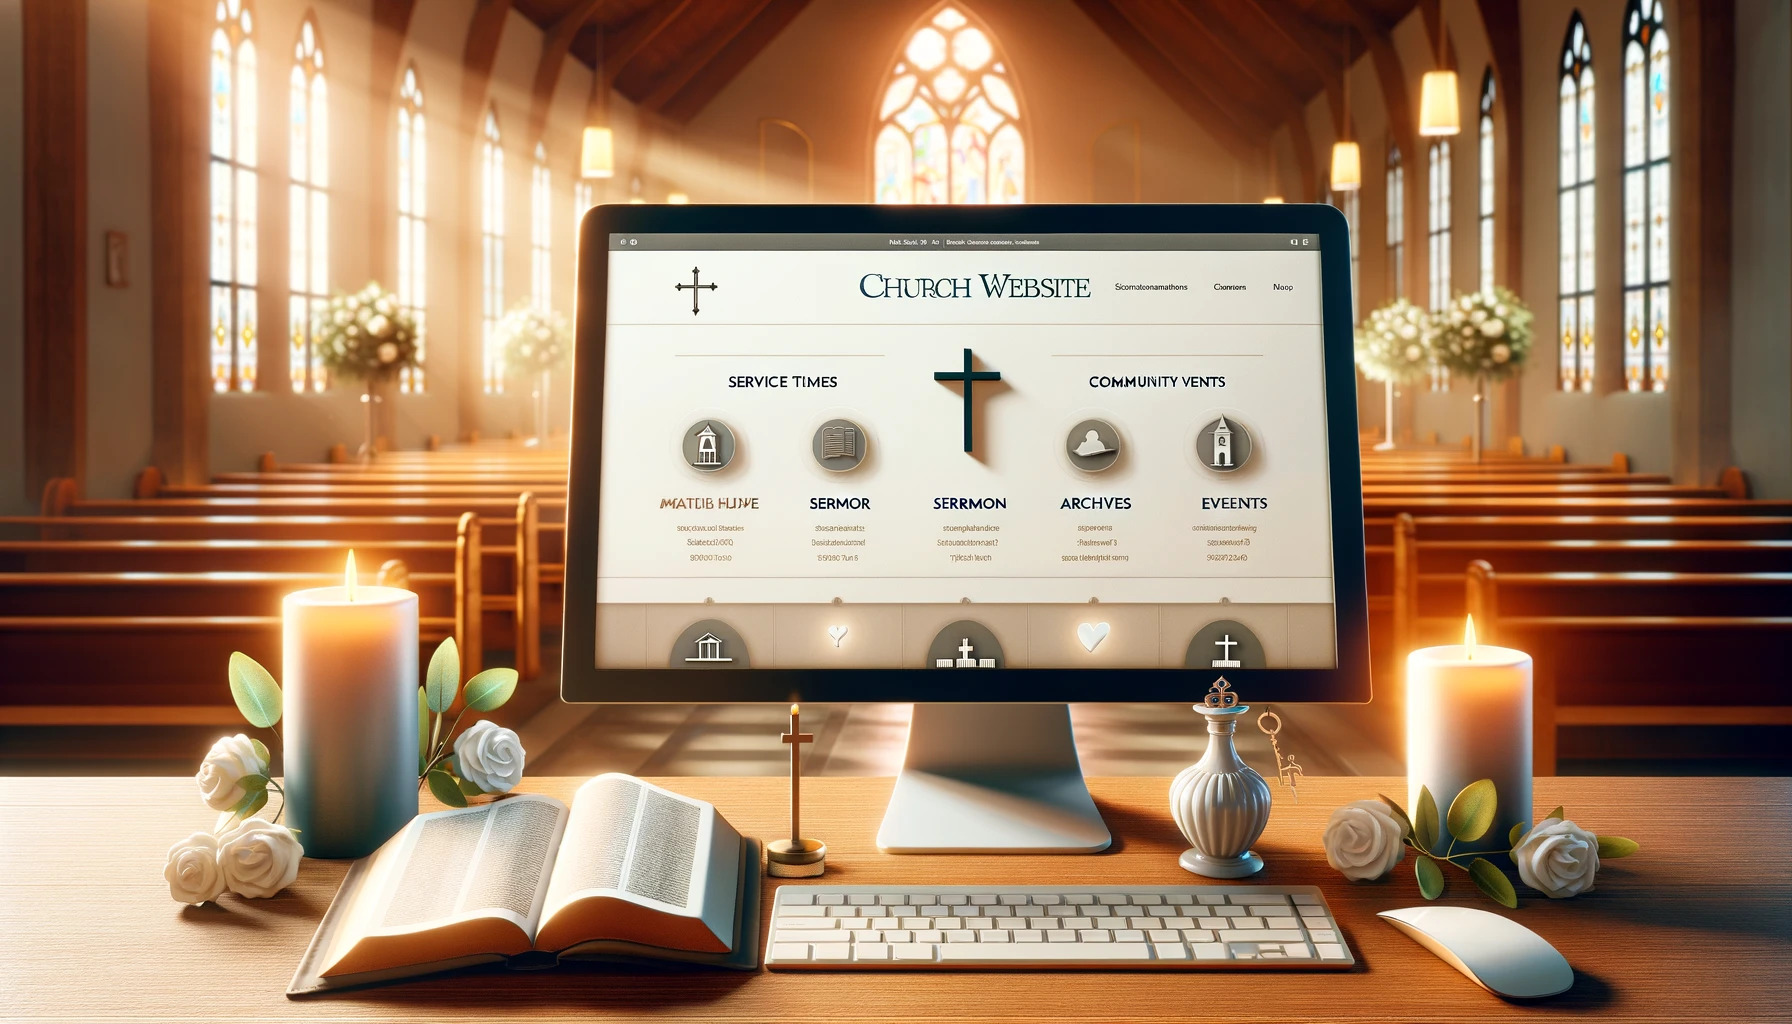 church website templates